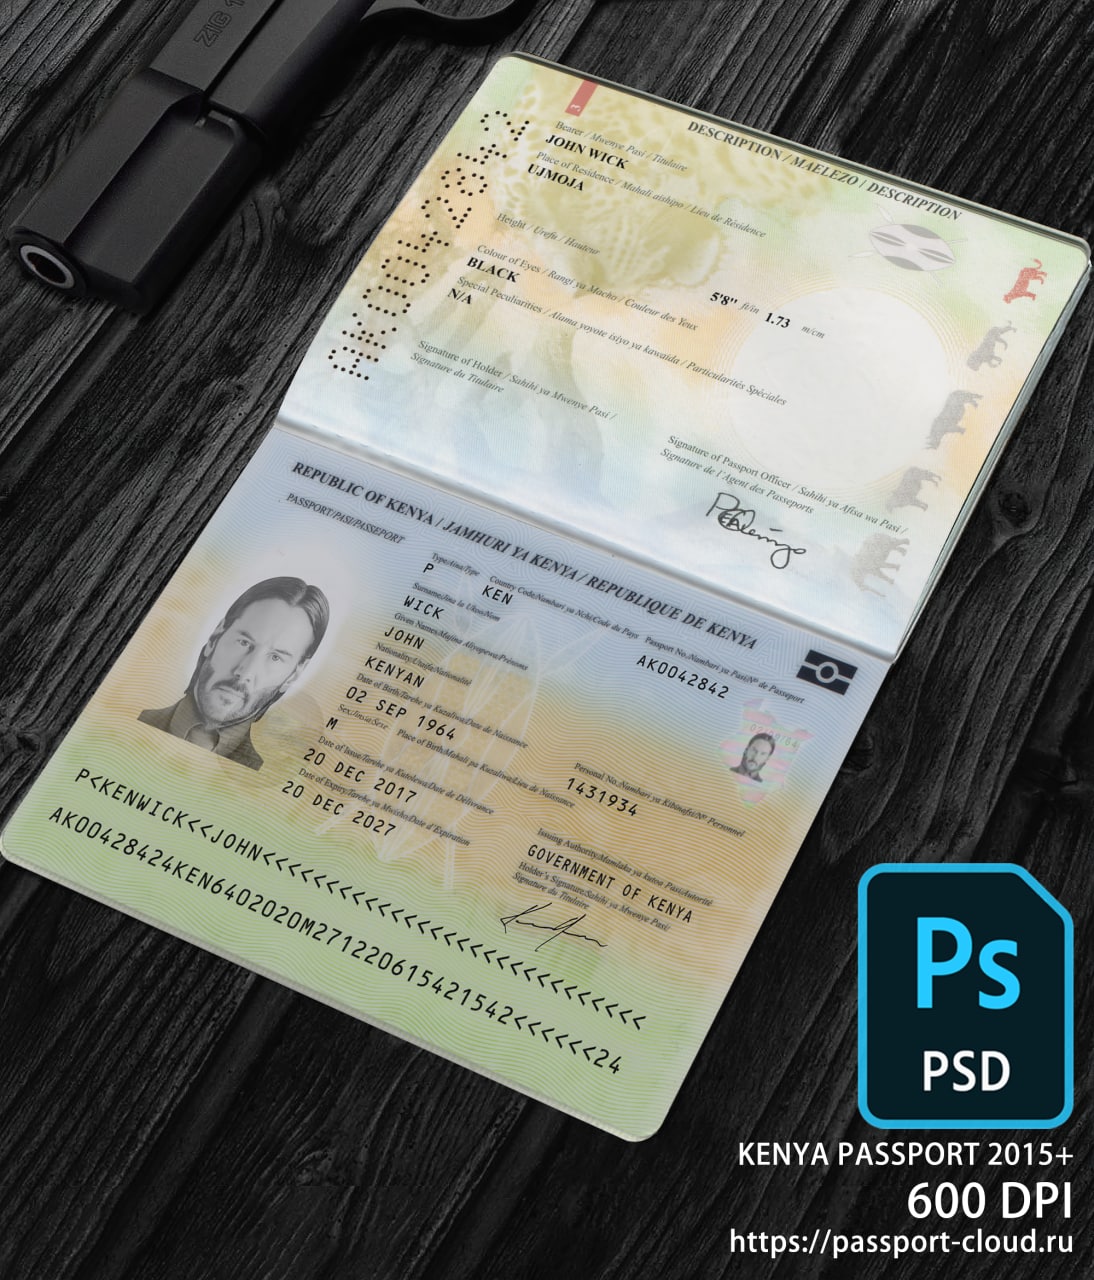 Kenya Passport 2015+ PSD-0